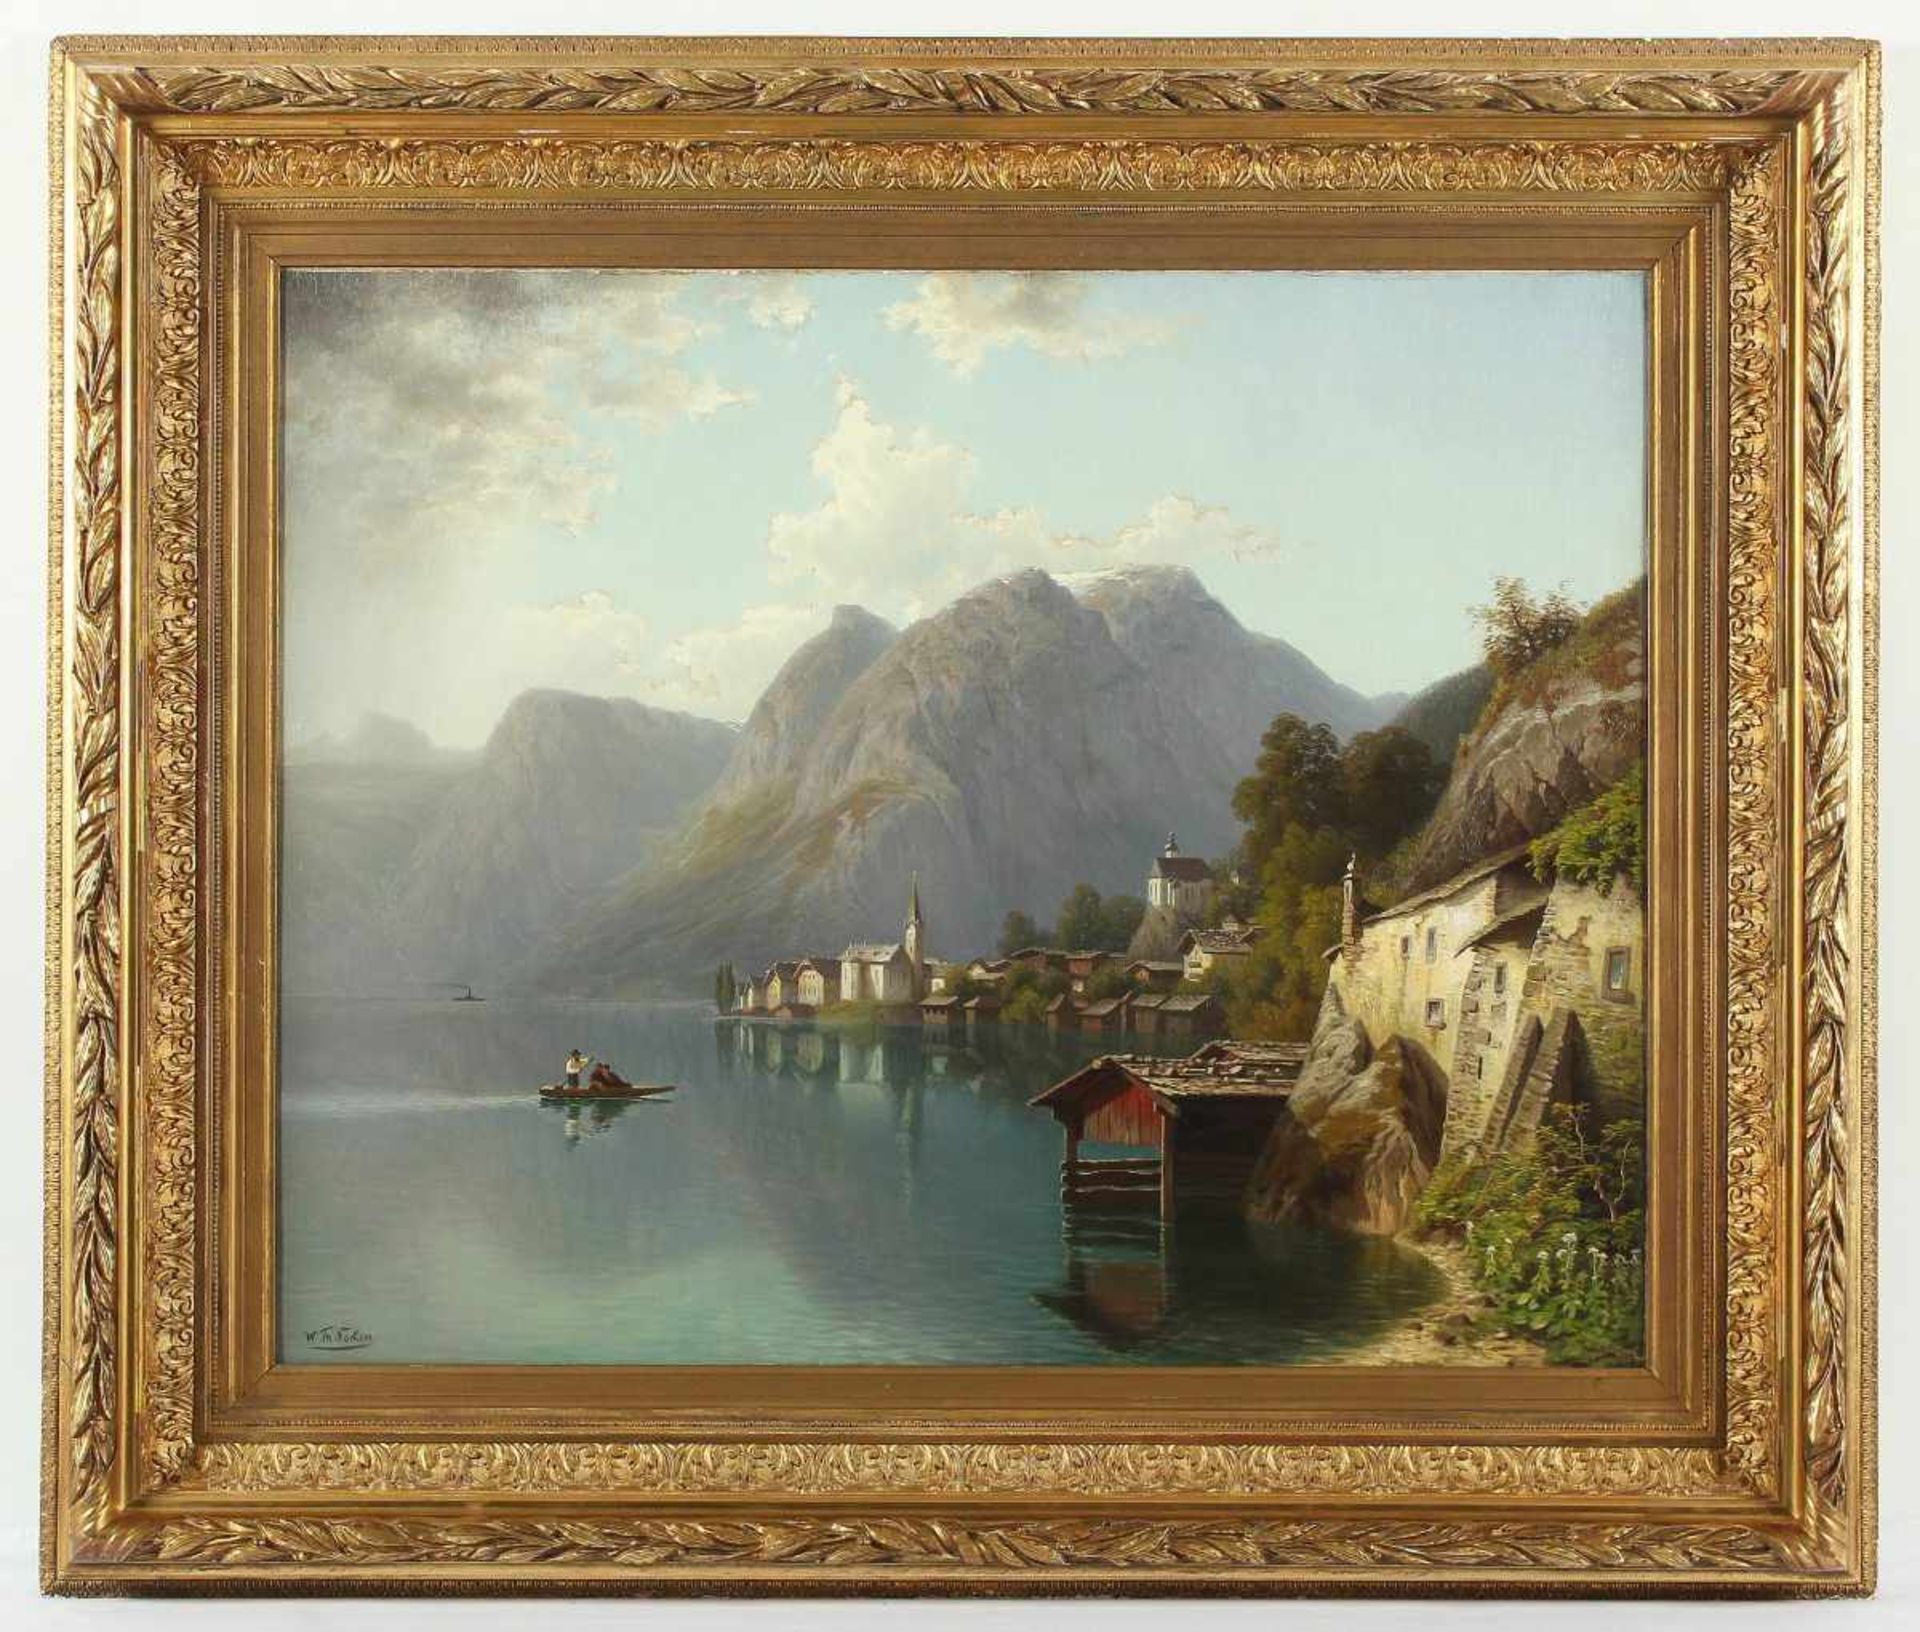 NOCKEN, Wilhelm Theodor (1830-1905), "Blick auf den Hallstädter See", Öl/Lwd., 76 x 95, doubliert,